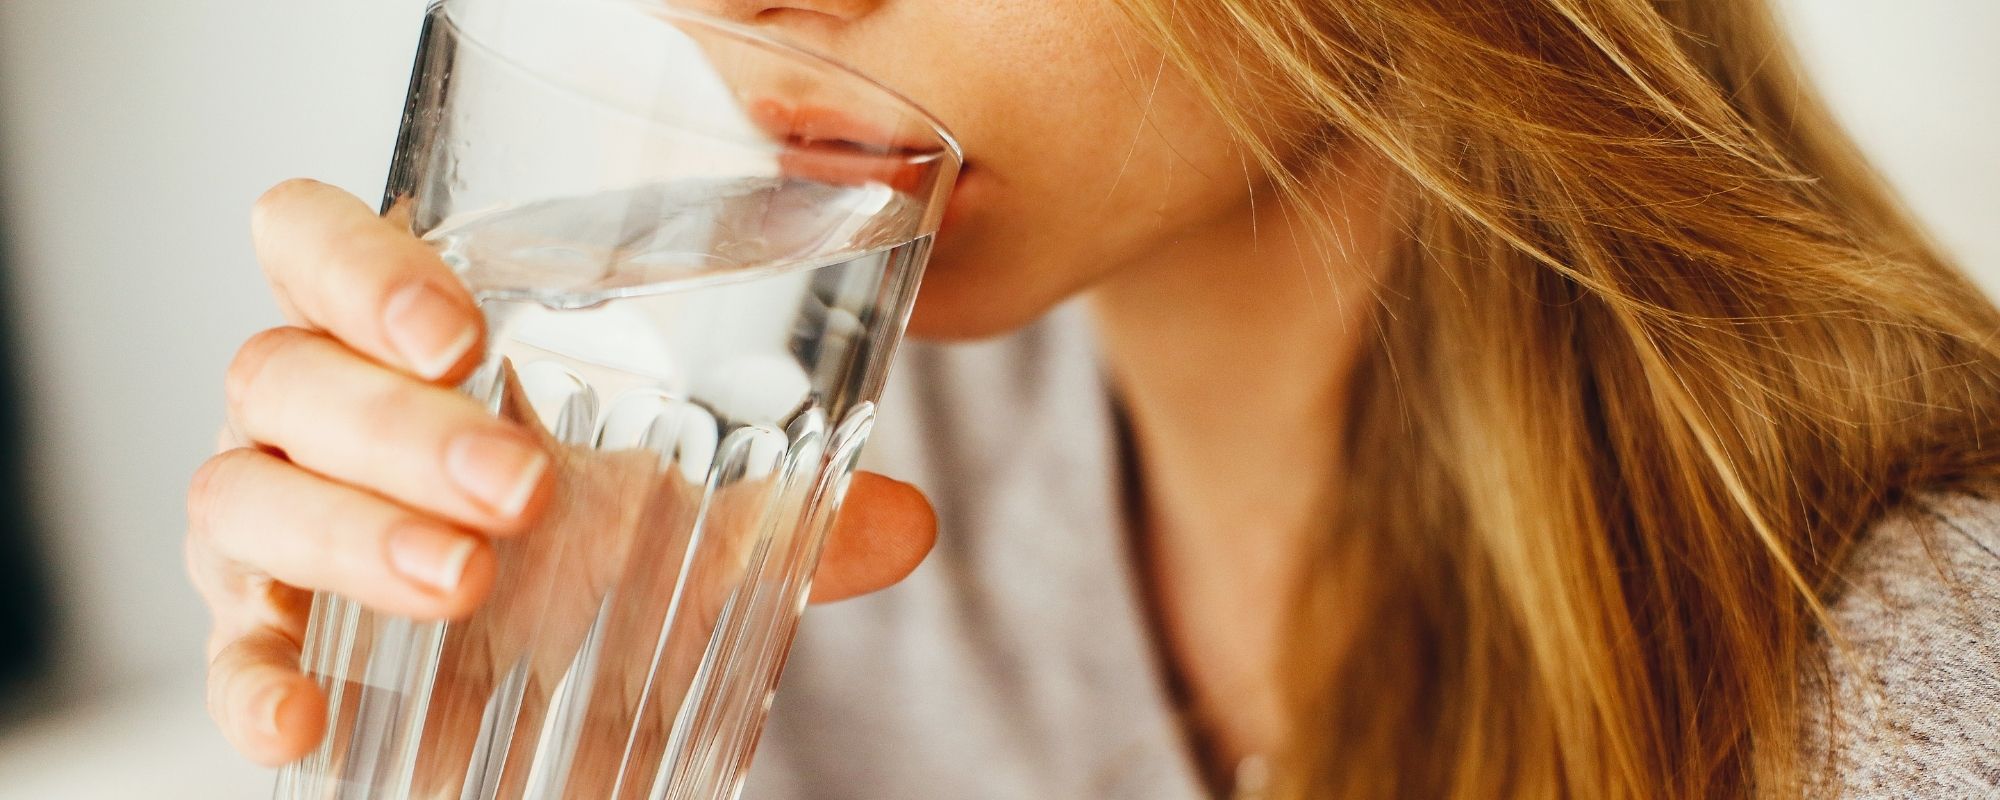 Une femme qui boit de l'eau dans un verre